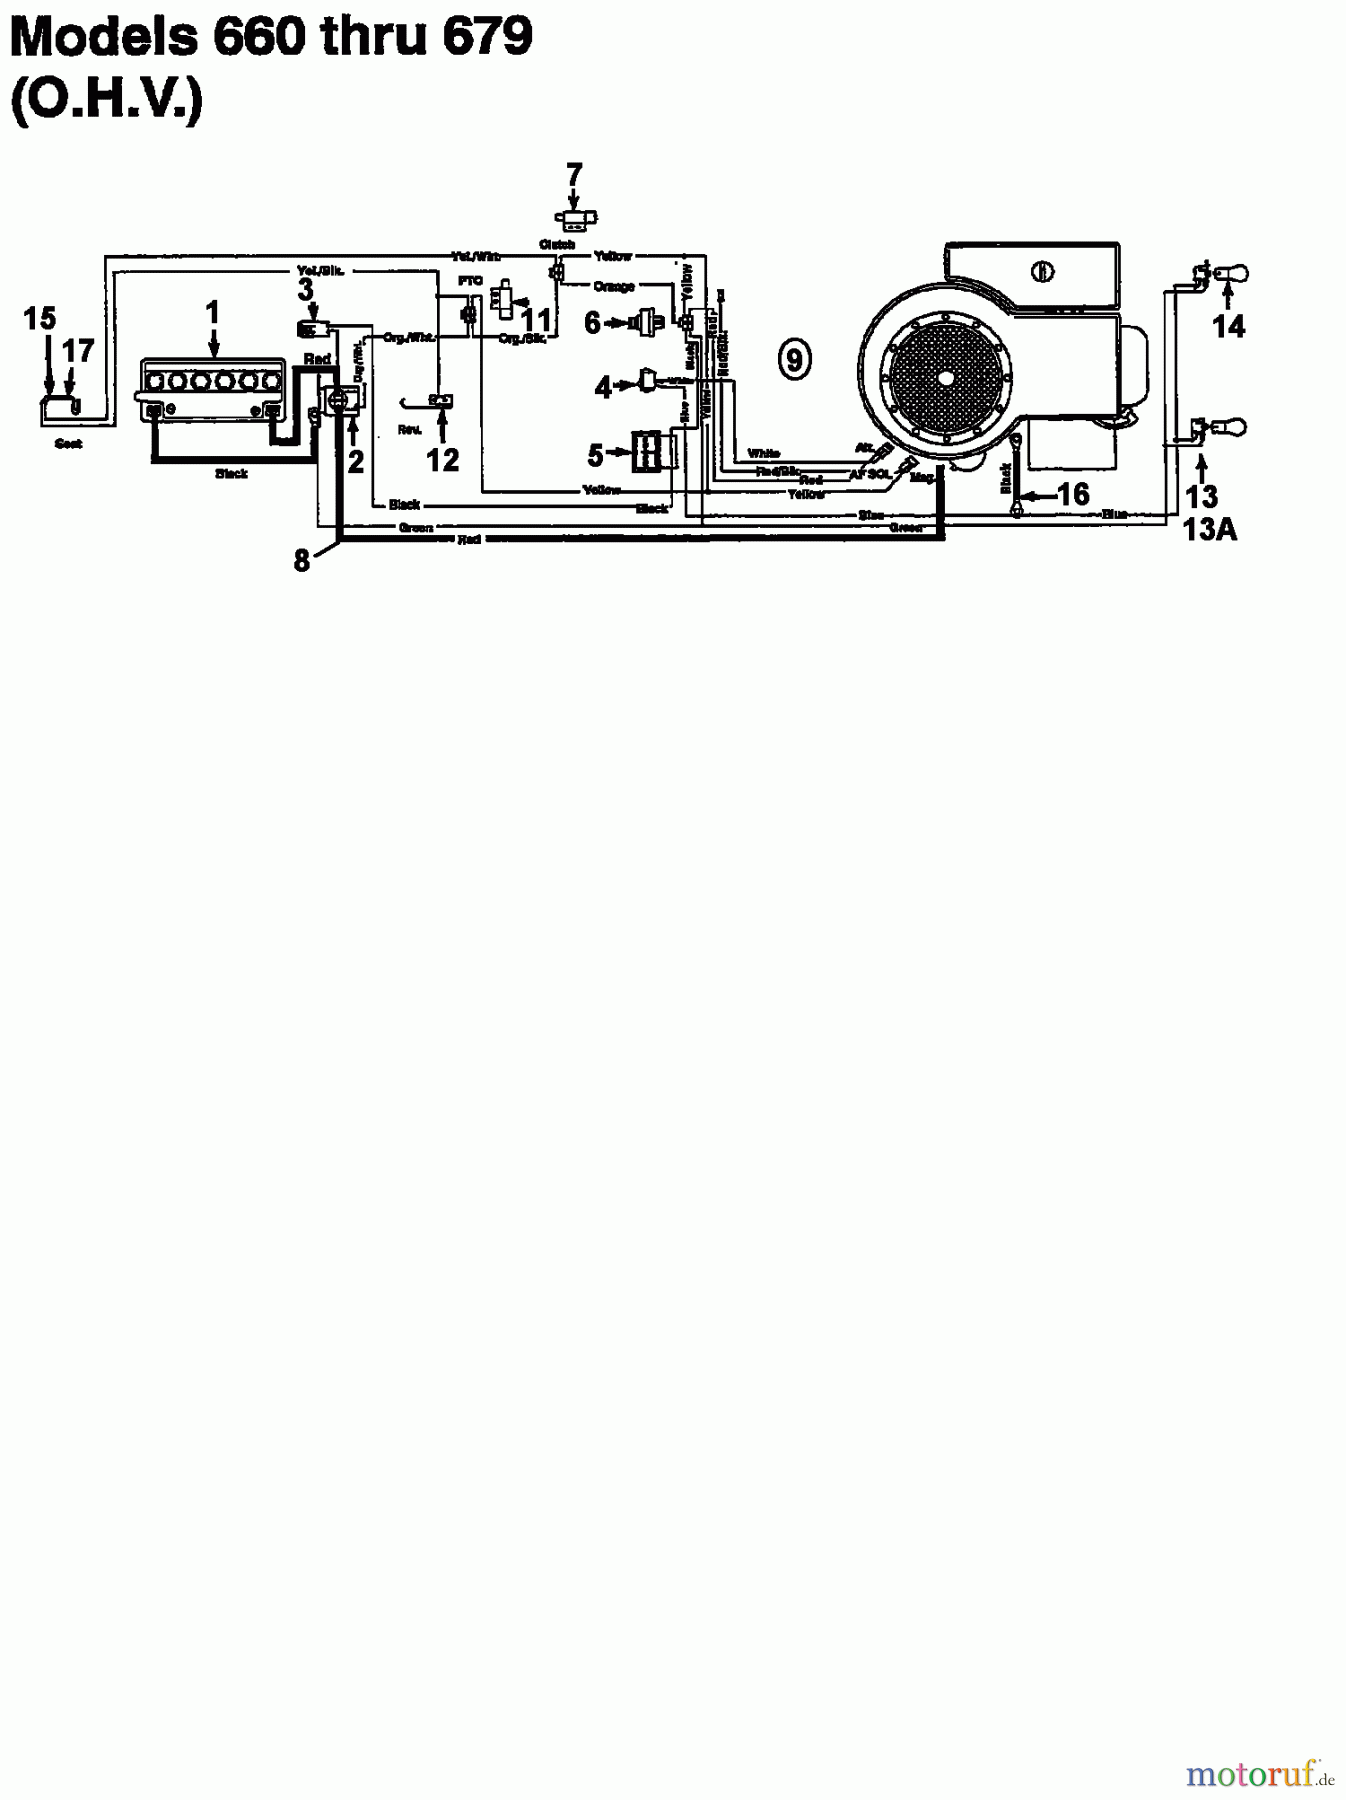  Florica Tracteurs de pelouse 12/76 HN 133I679C638  (1993) Plan electrique pour O.H.V.